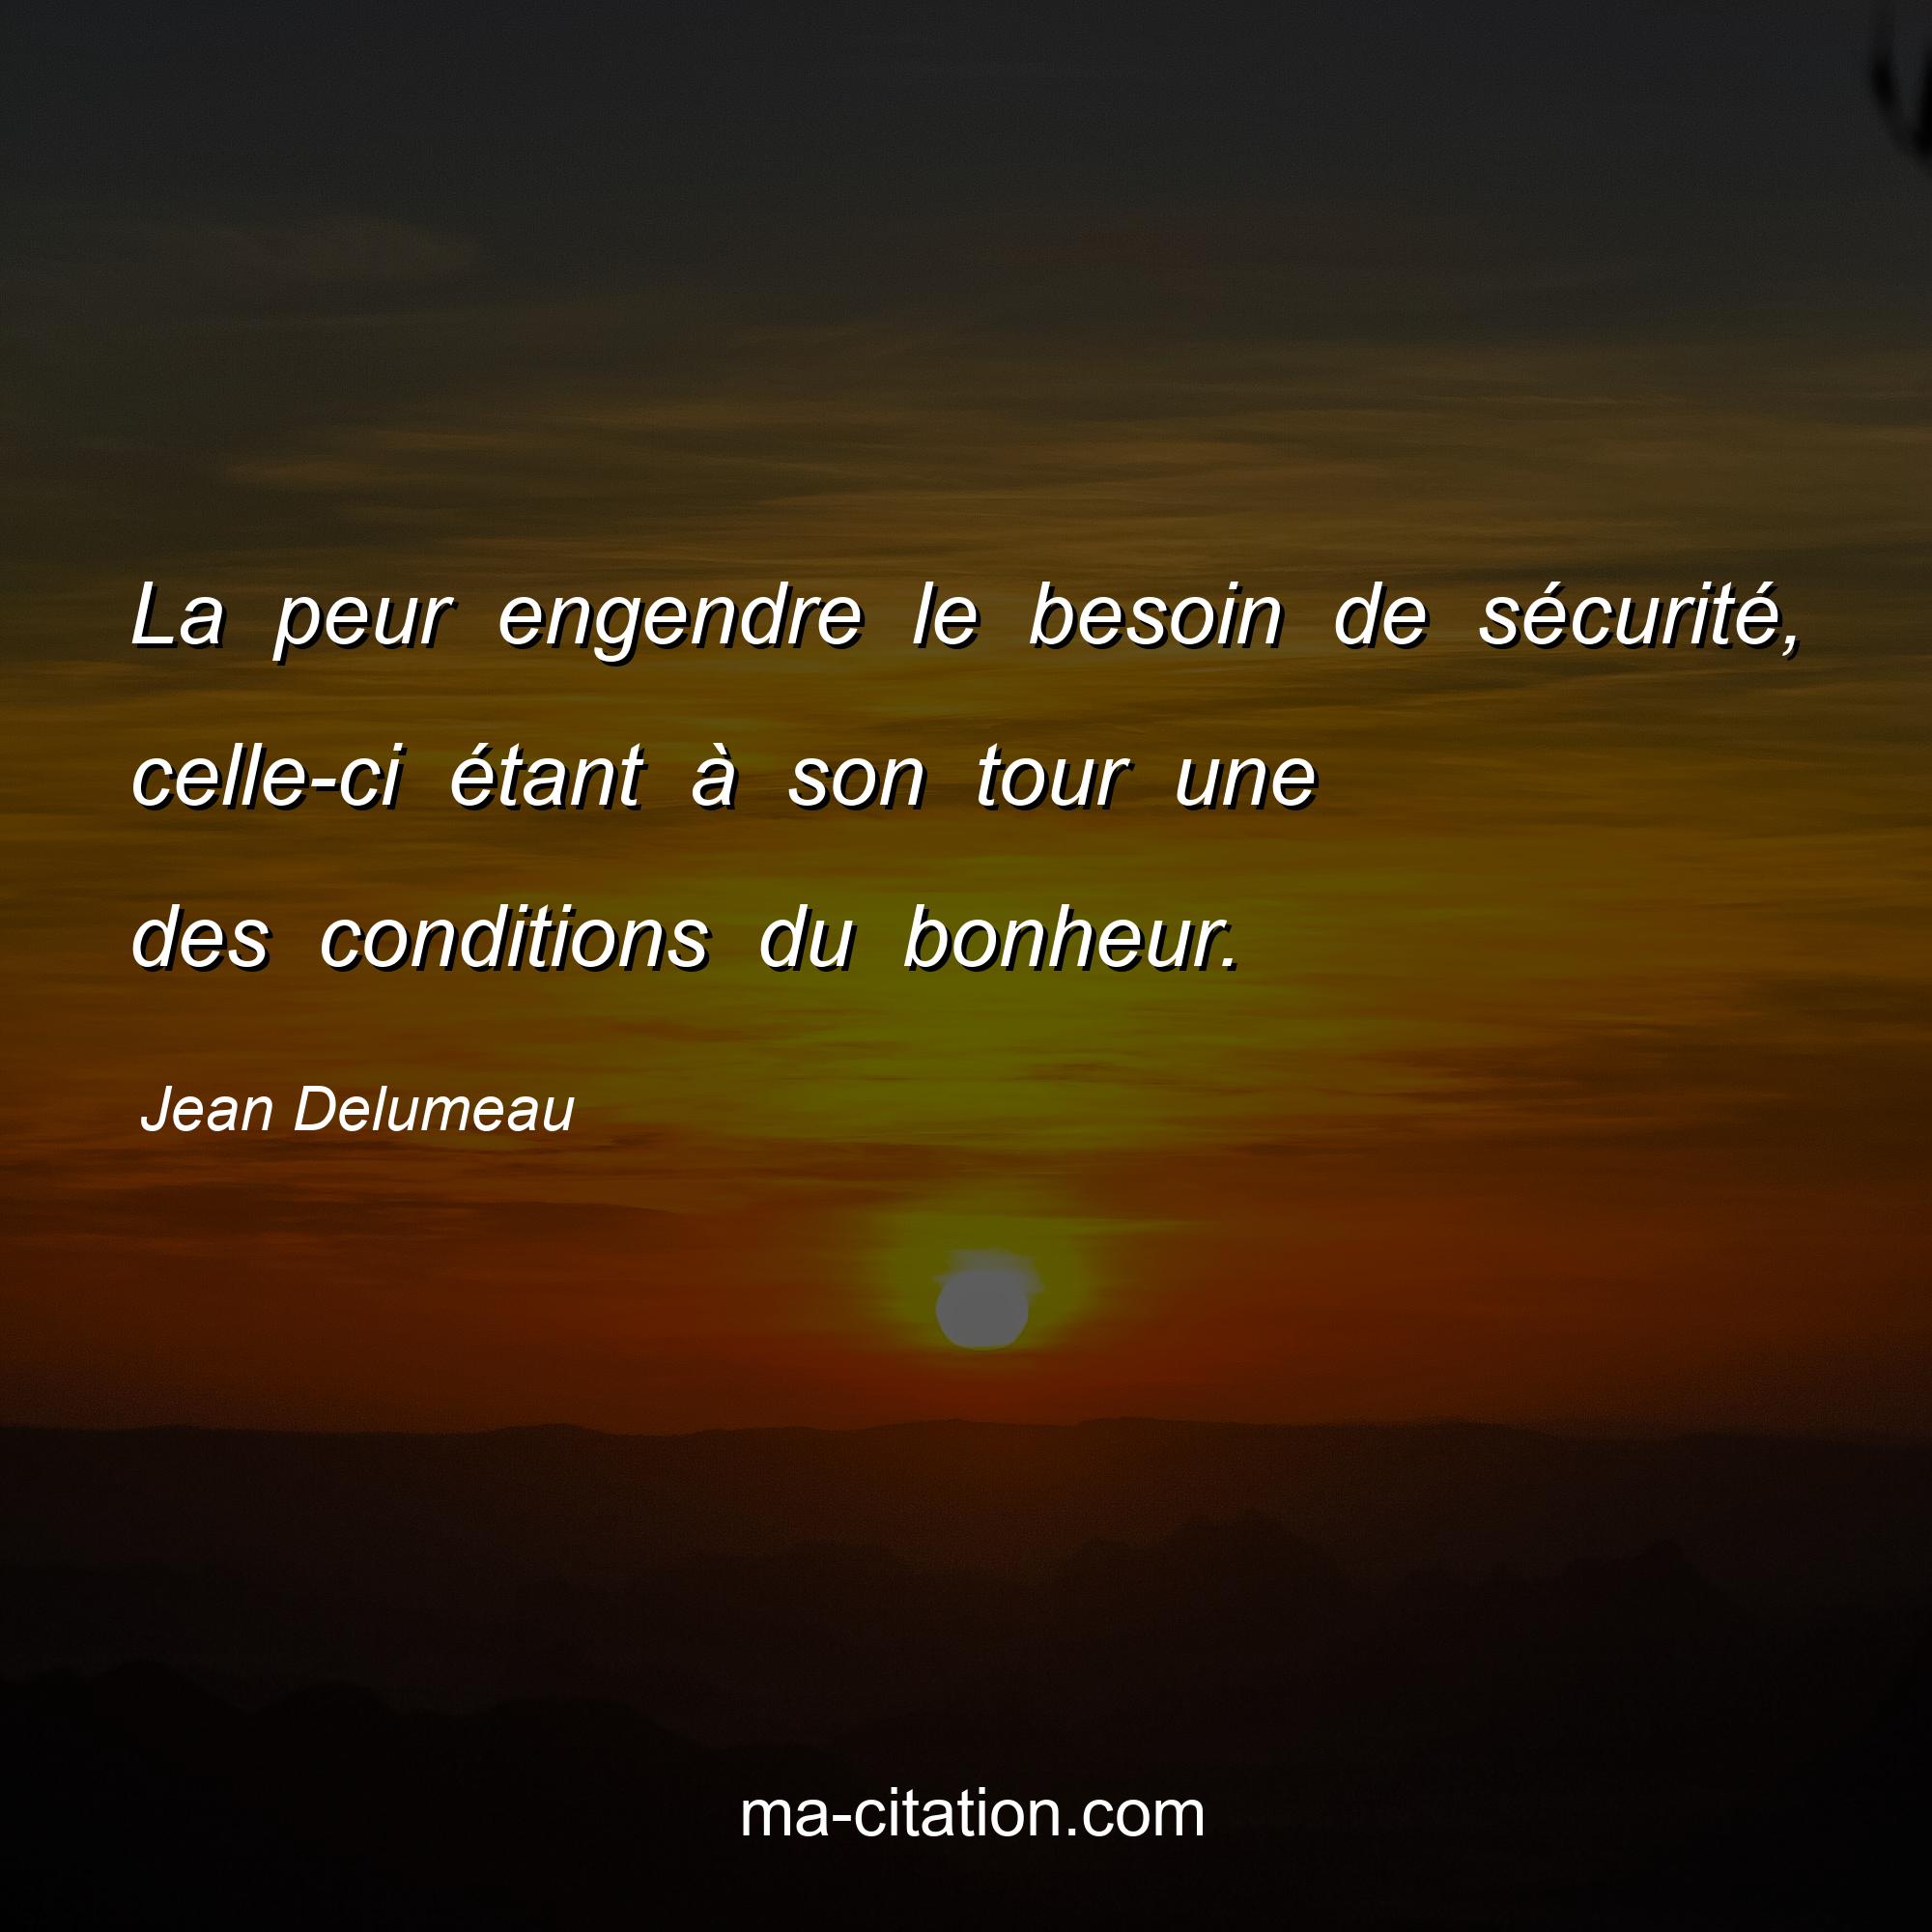 Jean Delumeau : La peur engendre le besoin de sécurité, celle-ci étant à son tour une des conditions du bonheur.